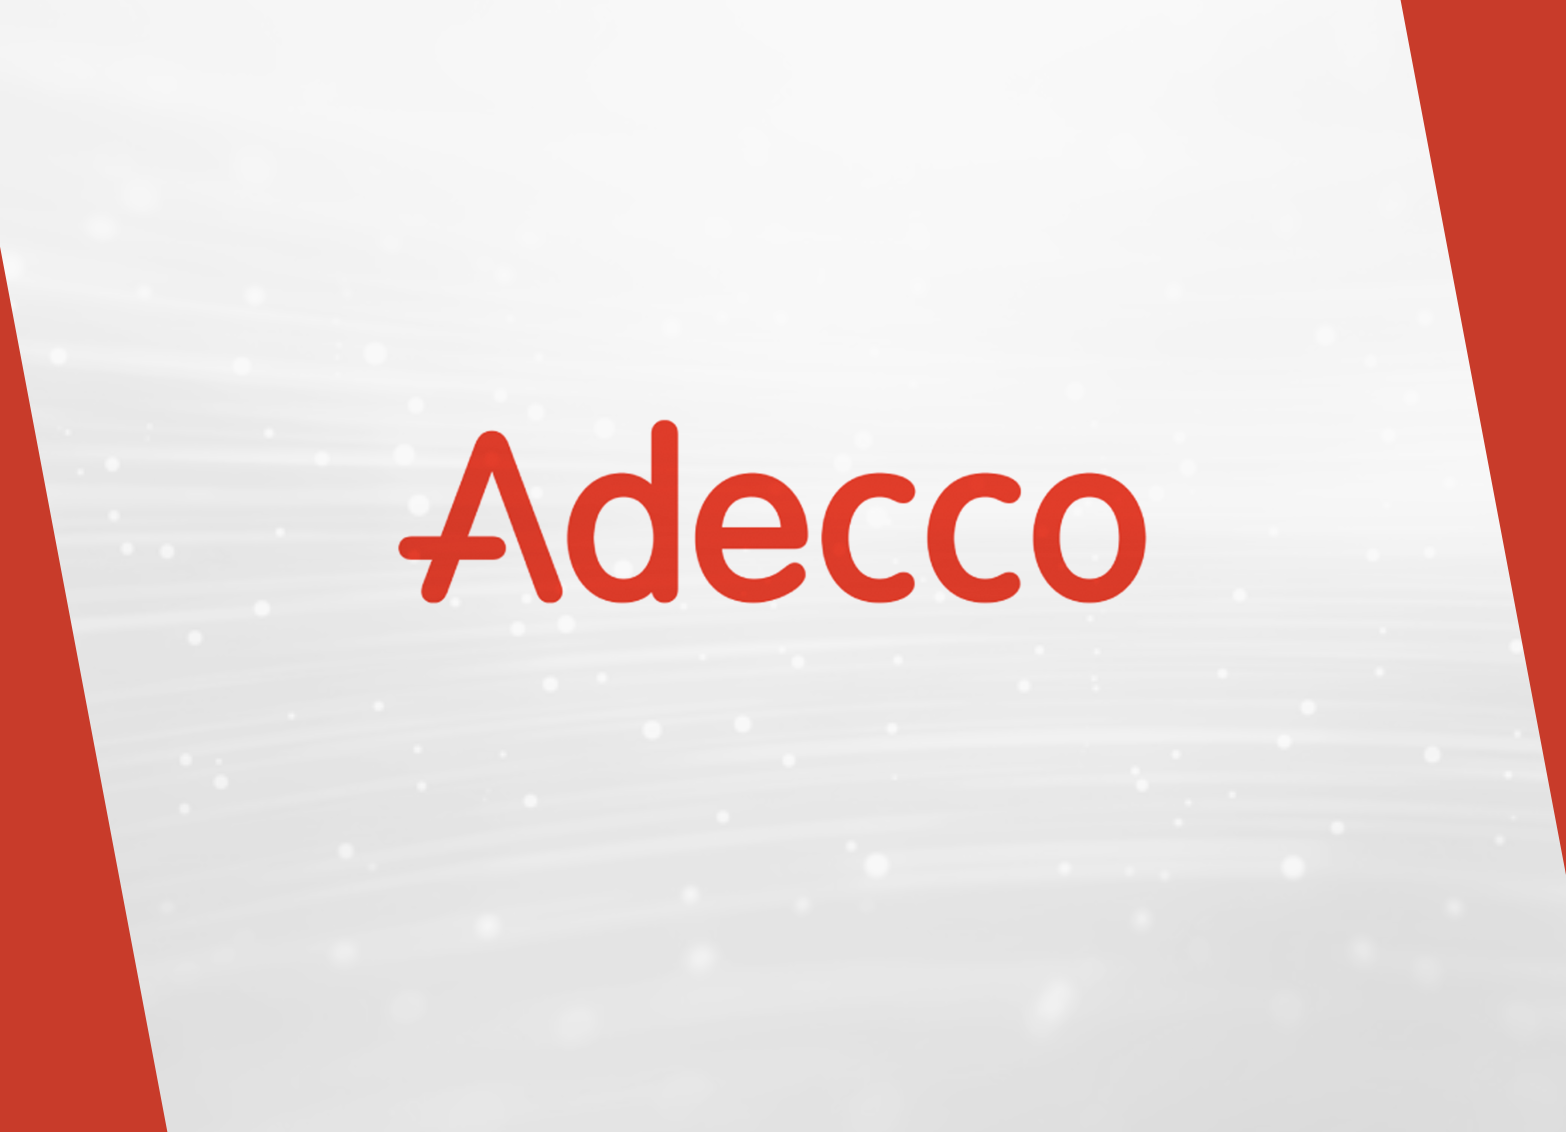 Adecco afterwork peddypaper